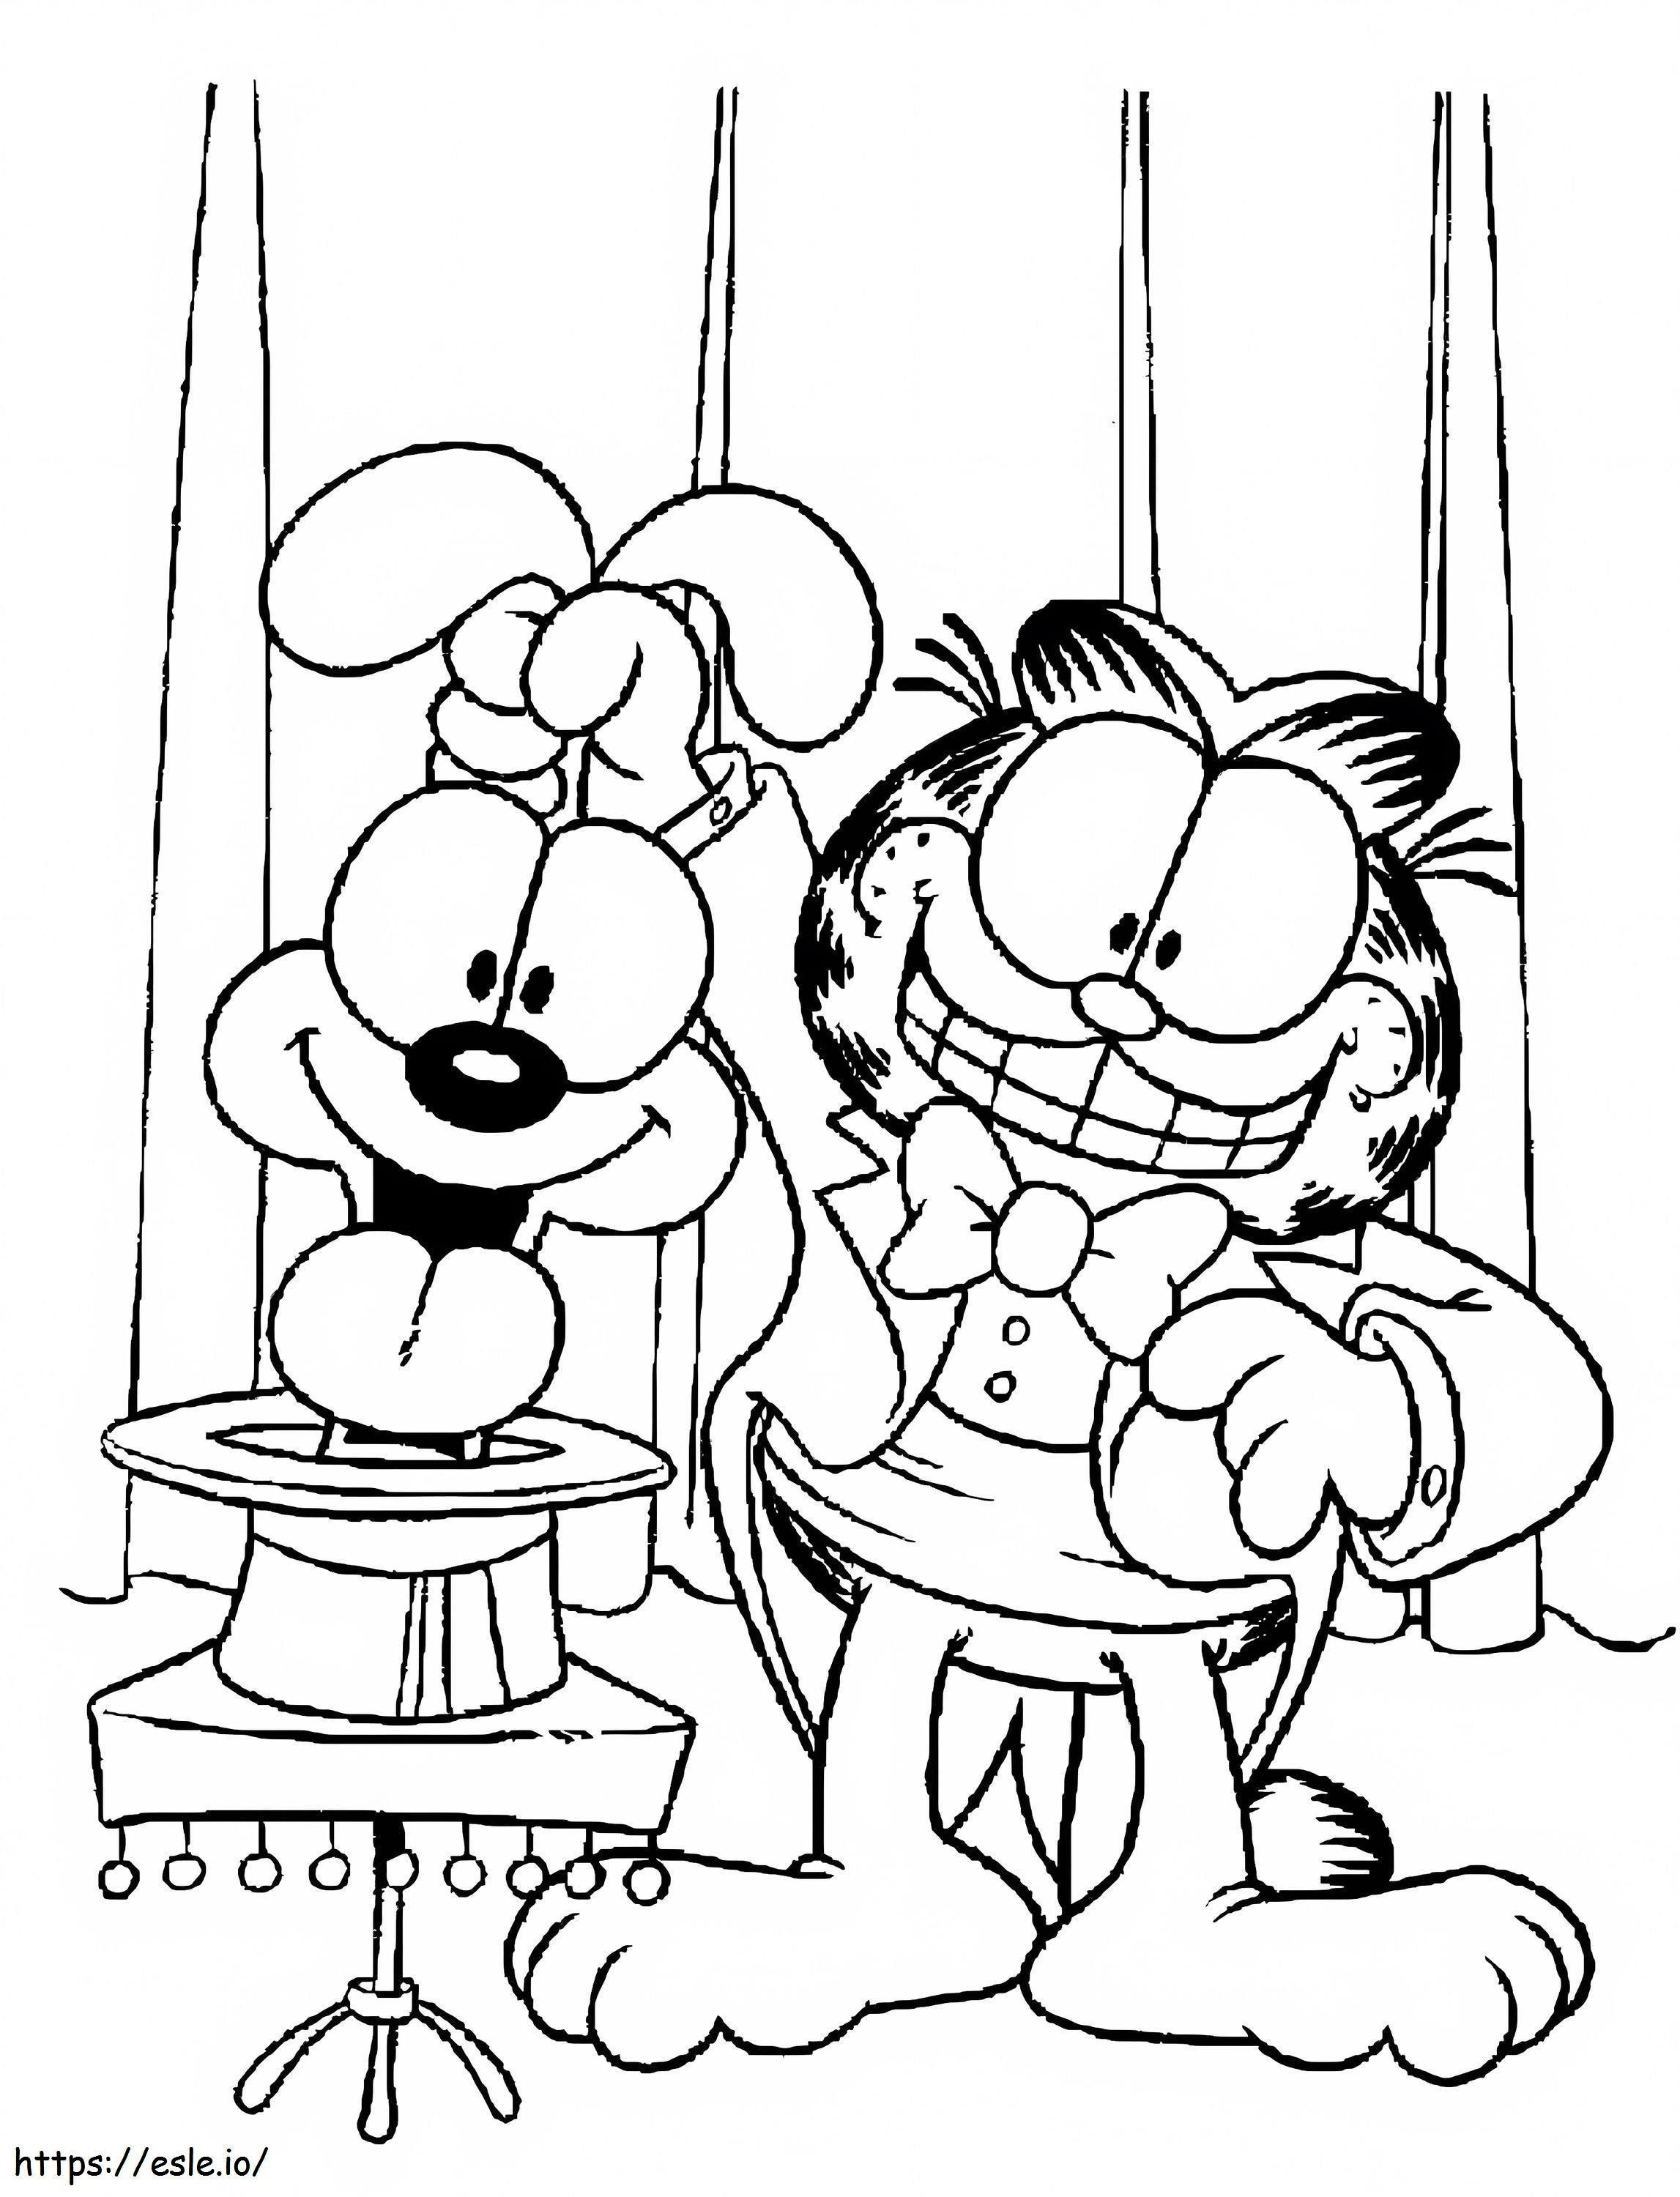 Garfield și Odie interpretând un spectacol de magie de colorat